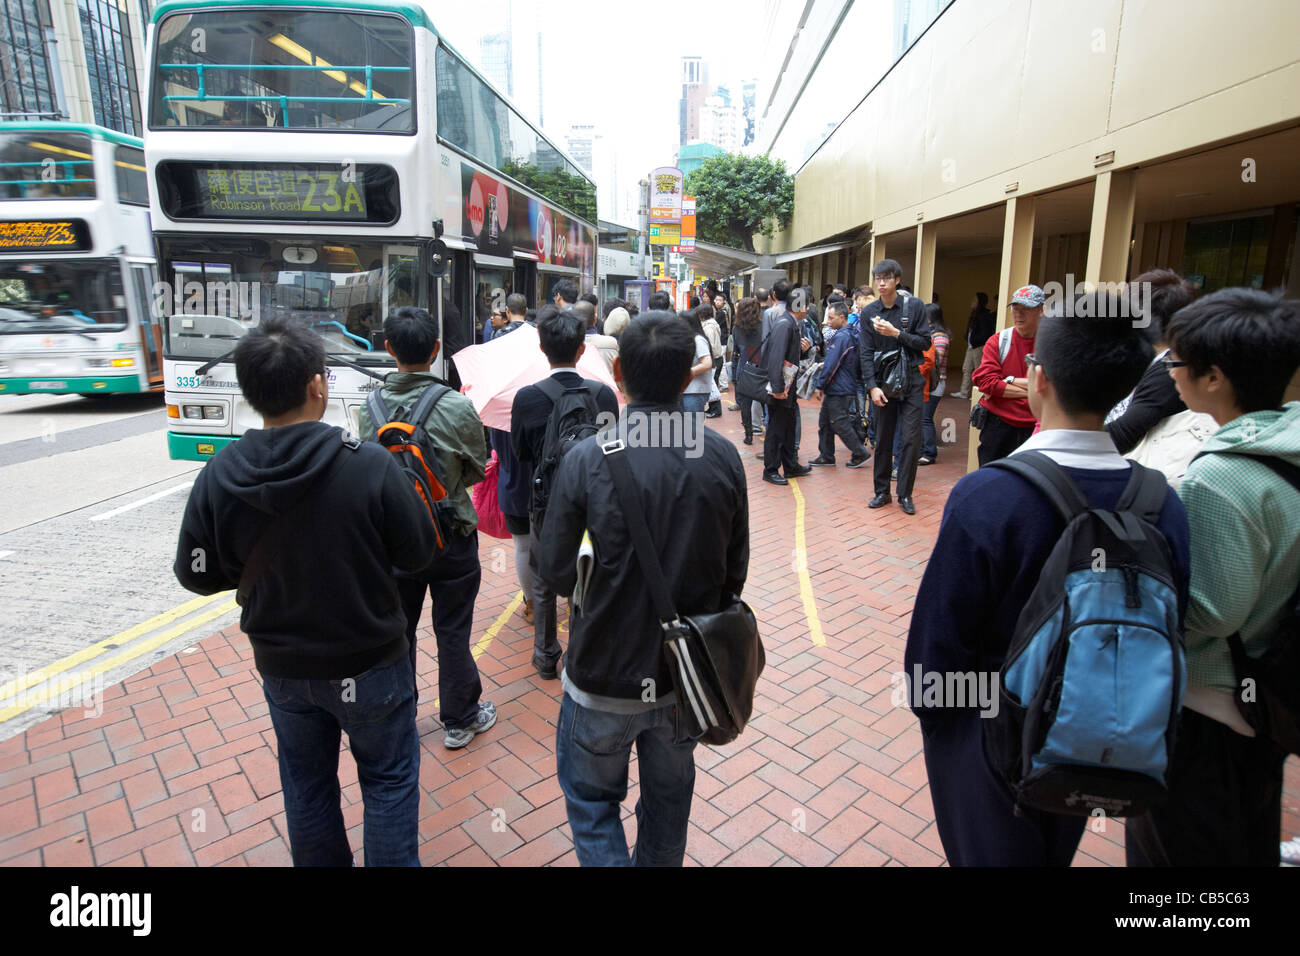 Les chinois en attente pour un bus dans le centre-ville de quartier de l'Amirauté l'île de Hong Kong région administrative spéciale de Chine Banque D'Images